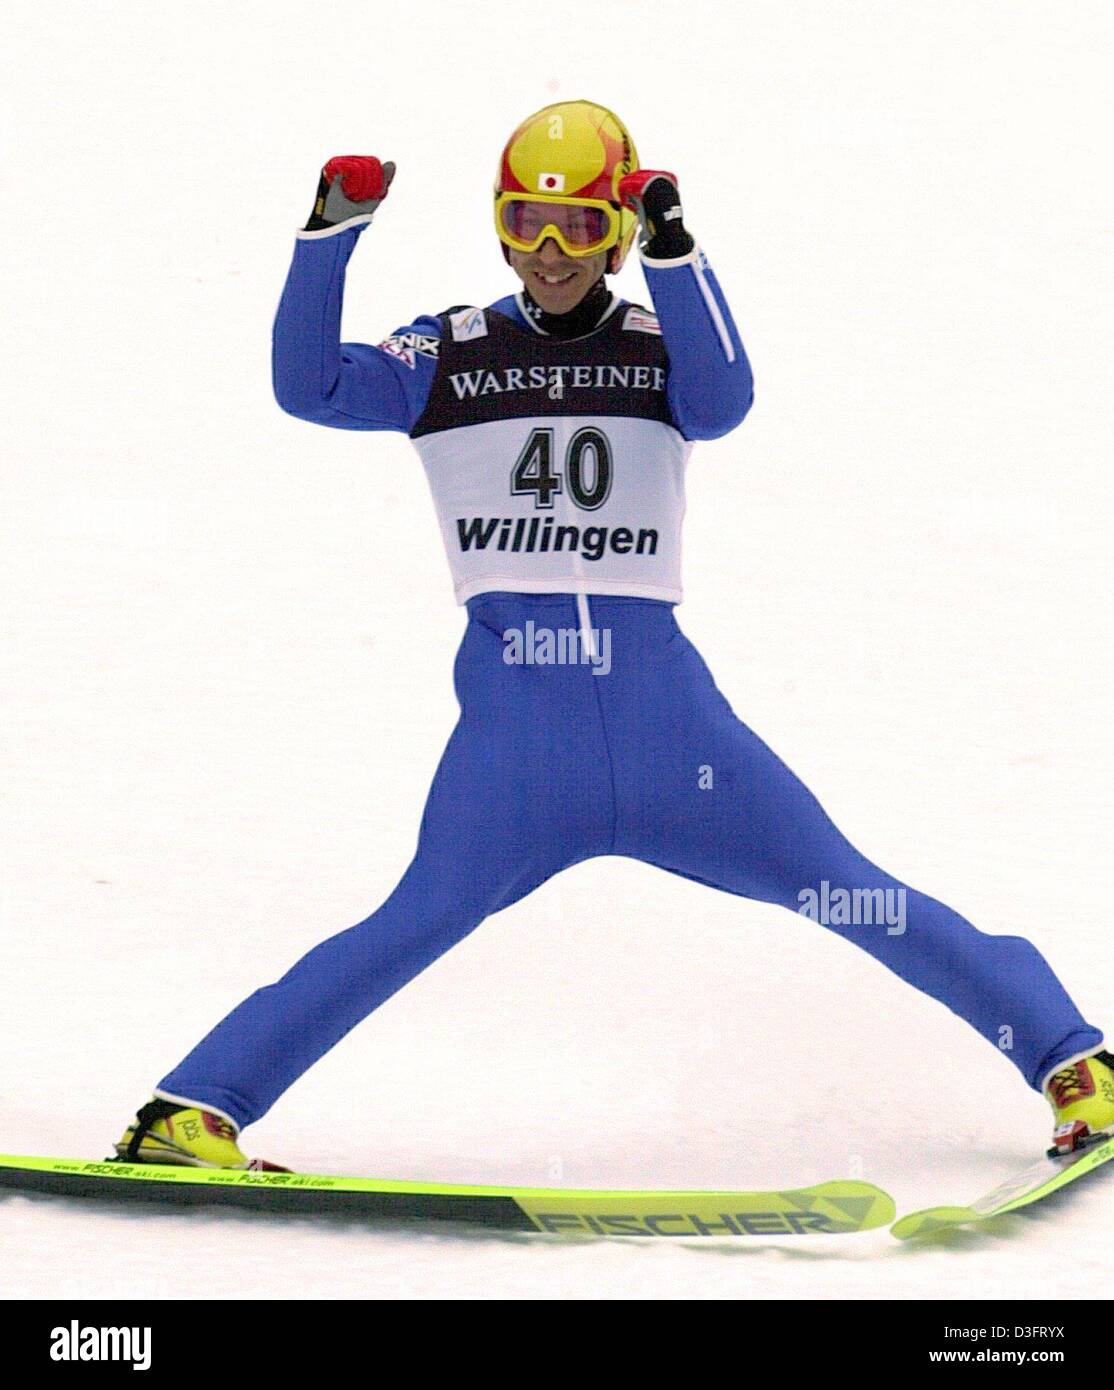 (Dpa) - Jubel nach seinem Sieg-Landung-Schanze bei der Fußballweltmeisterschaft in Willingen, Deutschland, 9. Februar 2003 japanische Skifahrer Noriaki Kasai.  Er gewann die Veranstaltung mit einem Abstand von 147 Metern. Stockfoto